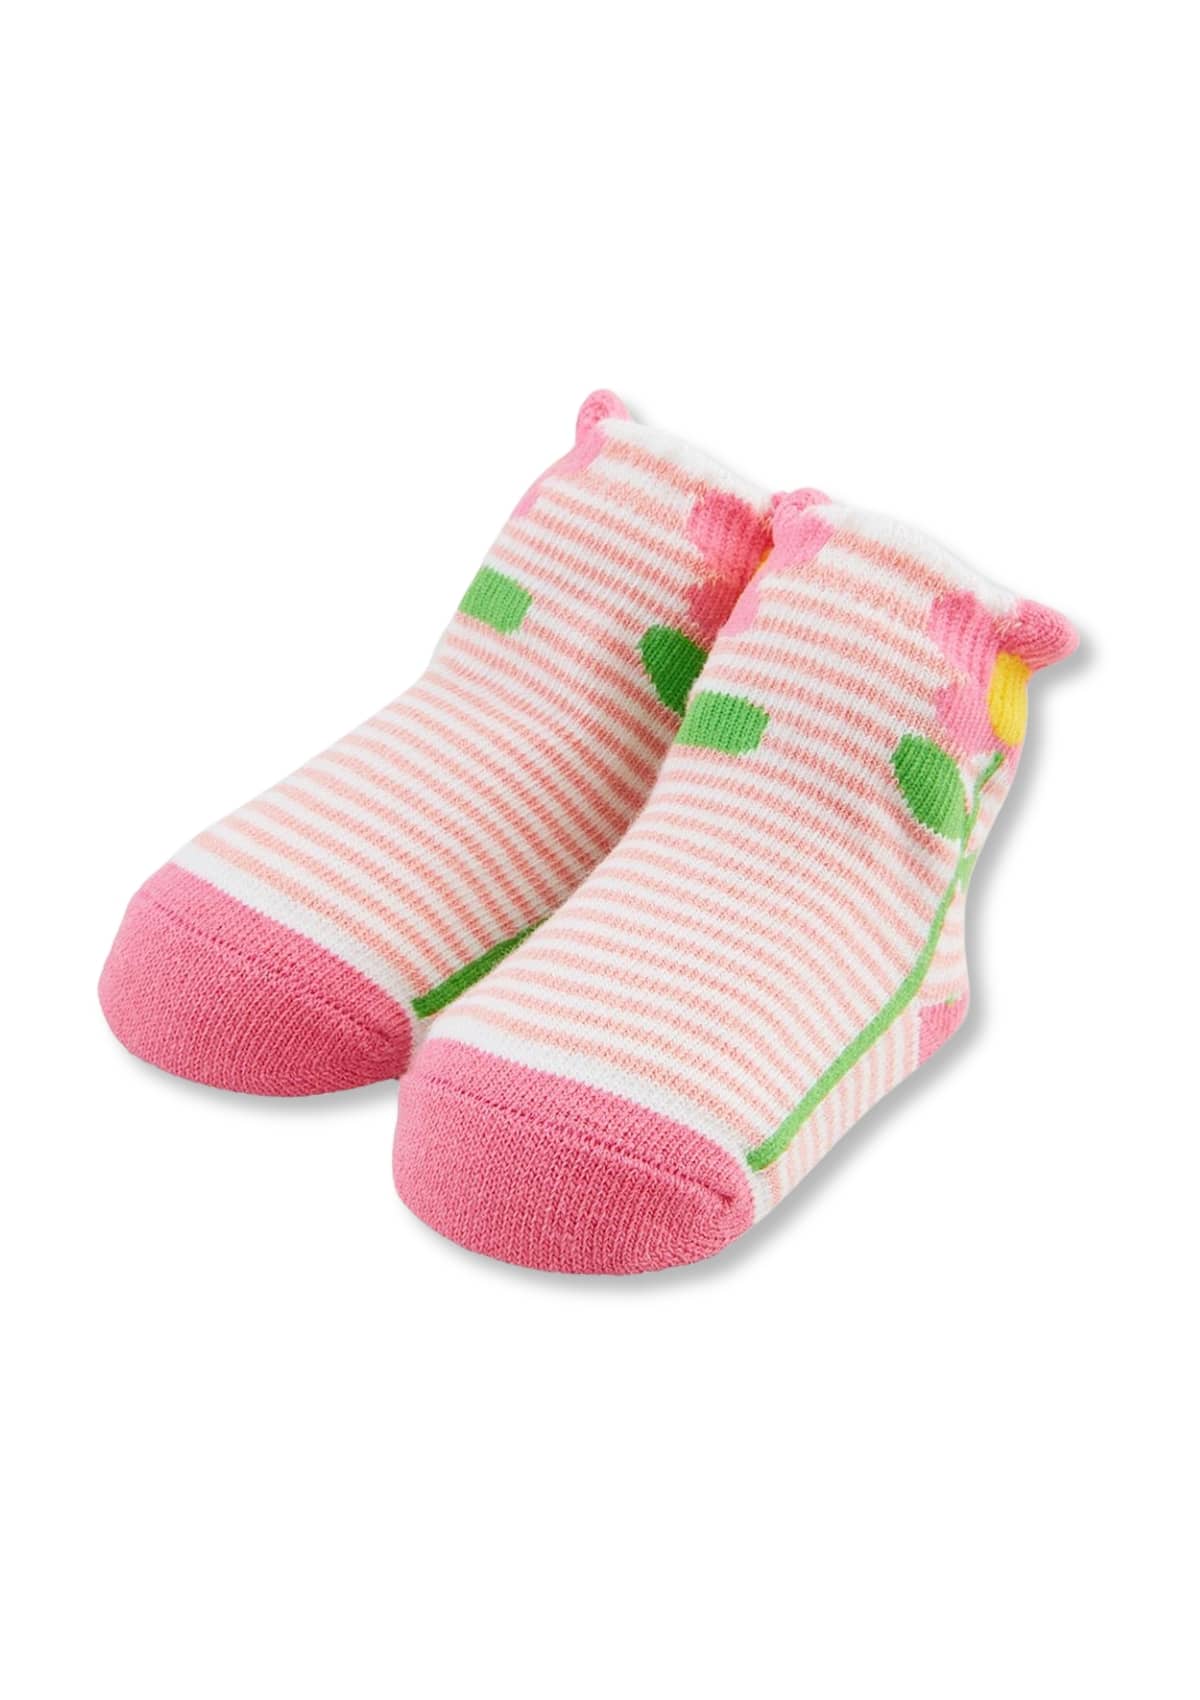 Striped Flower Baby Socks -Mud Pie / One Coas- Ruby Jane-